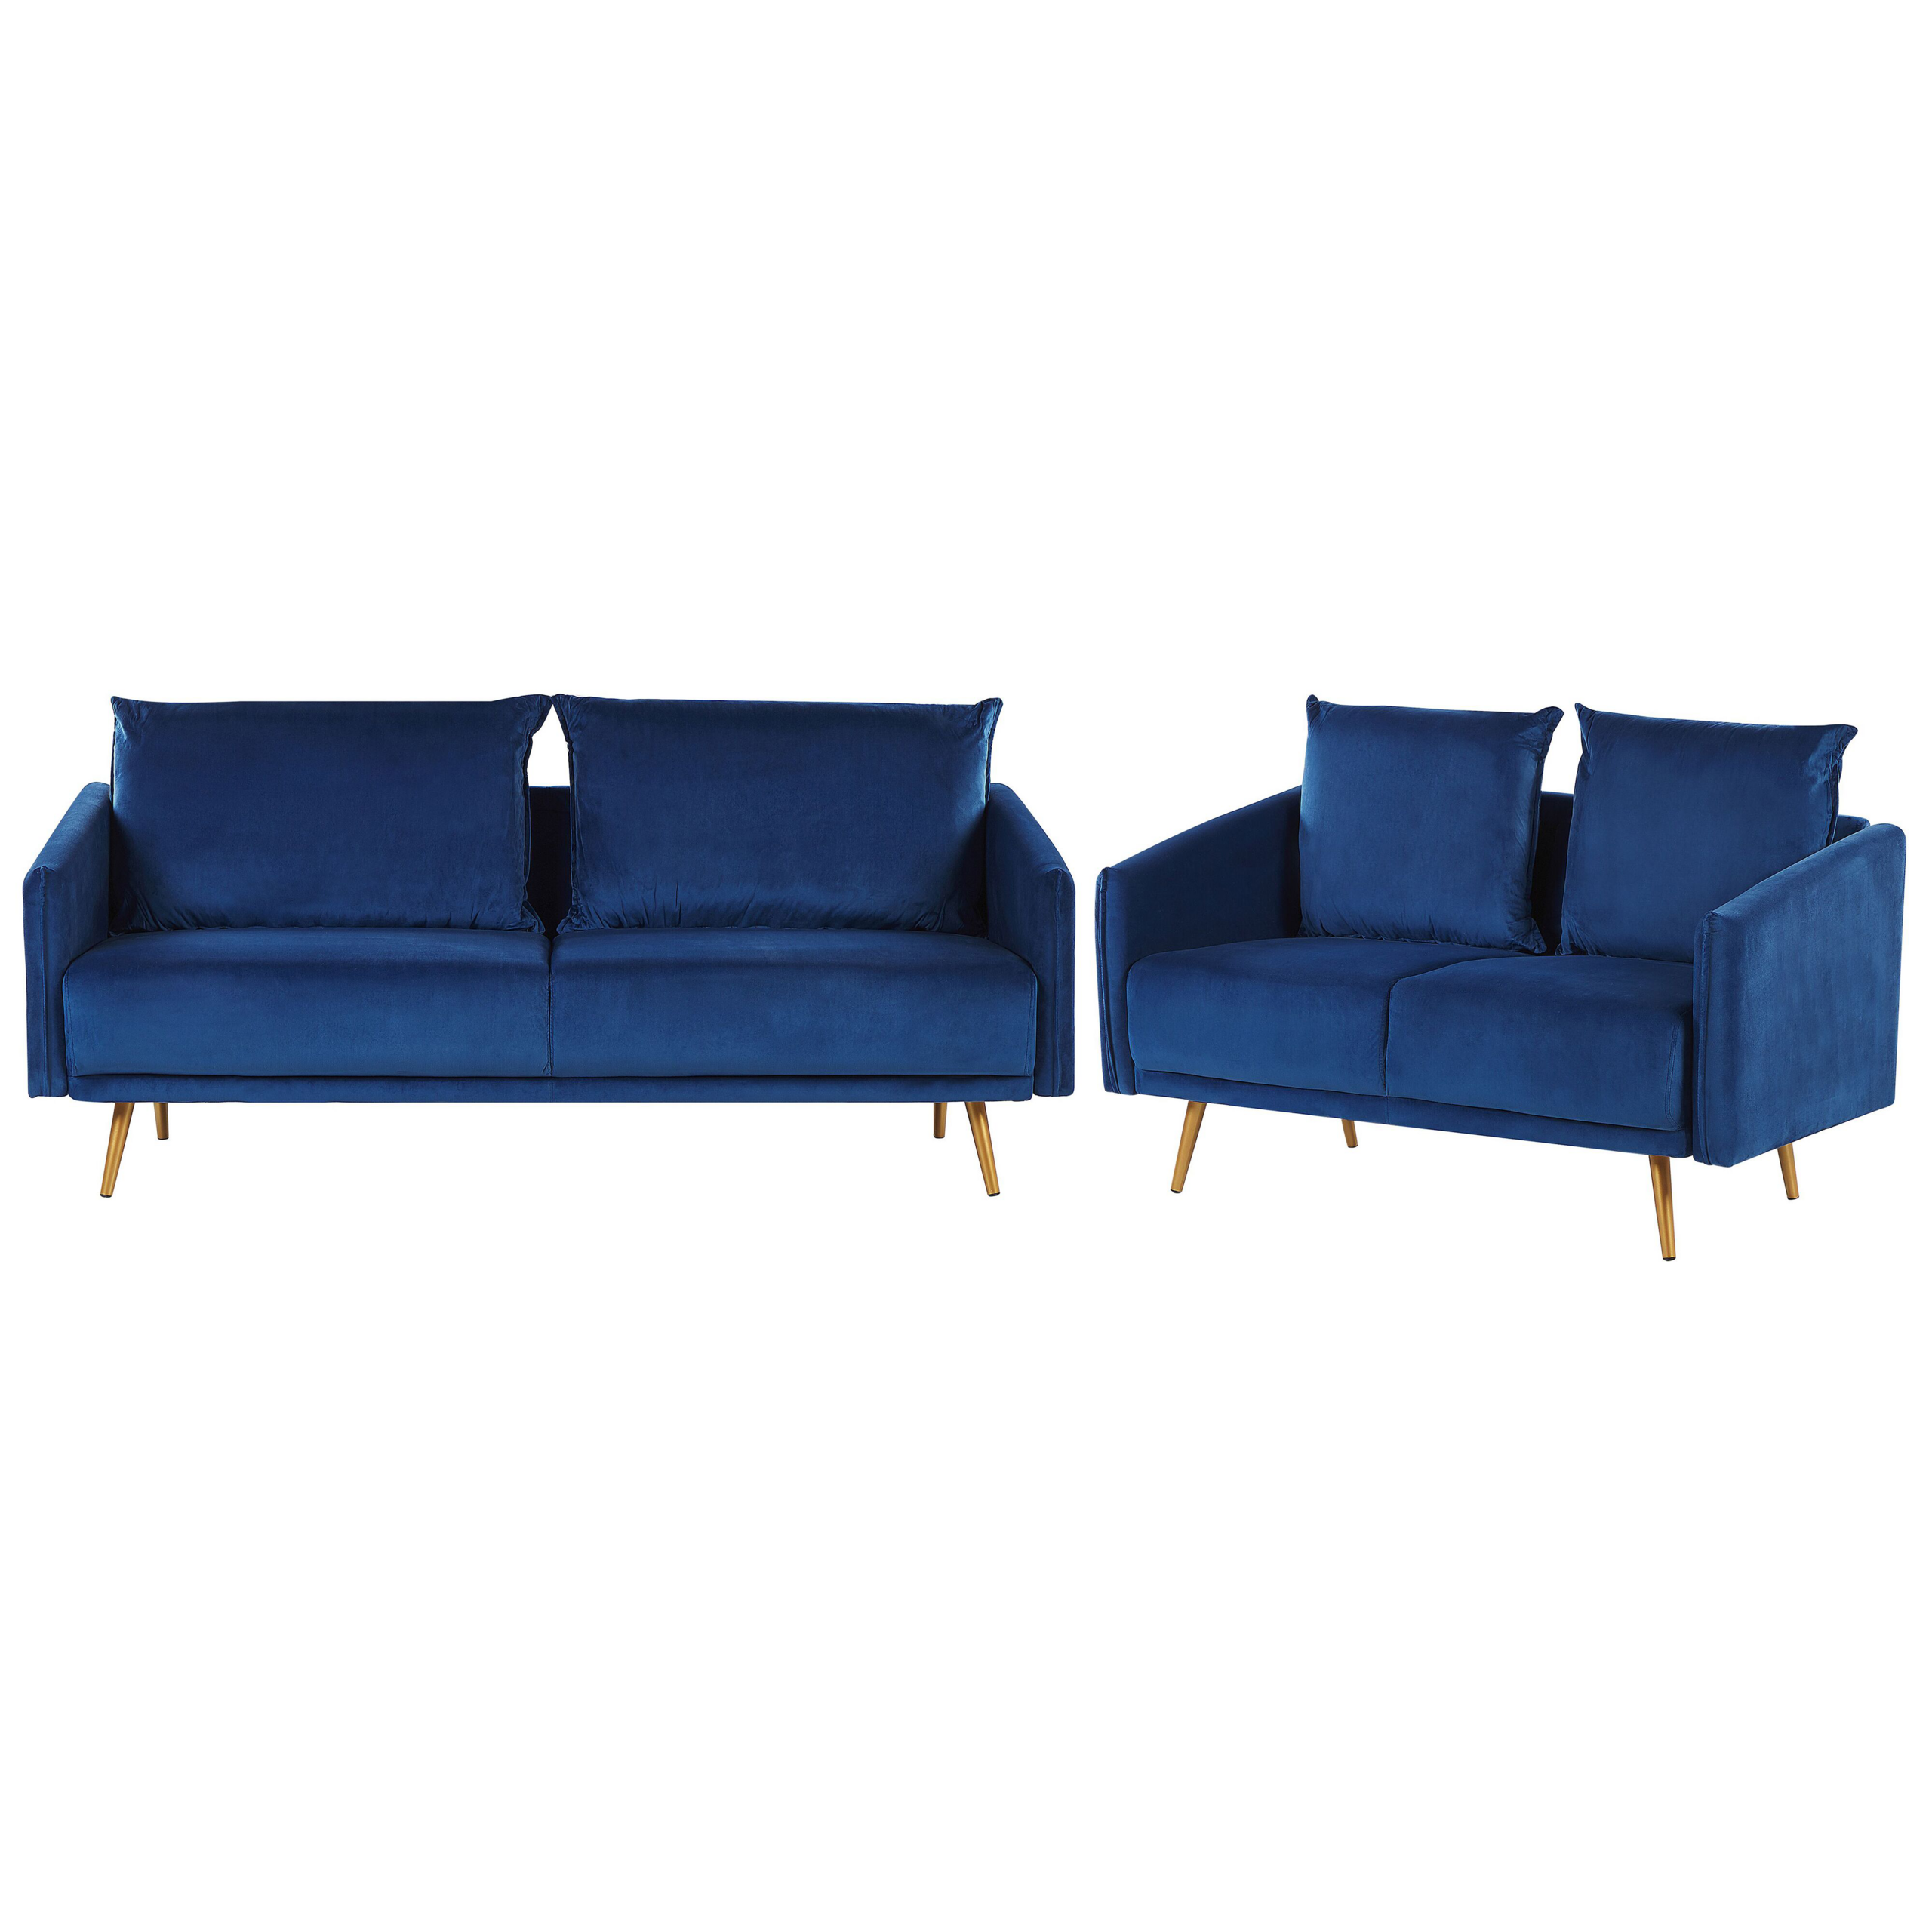 Beliani Living Room Set Navy Blue Velvet Back Cushions Metal Golden Legs Retro Glam